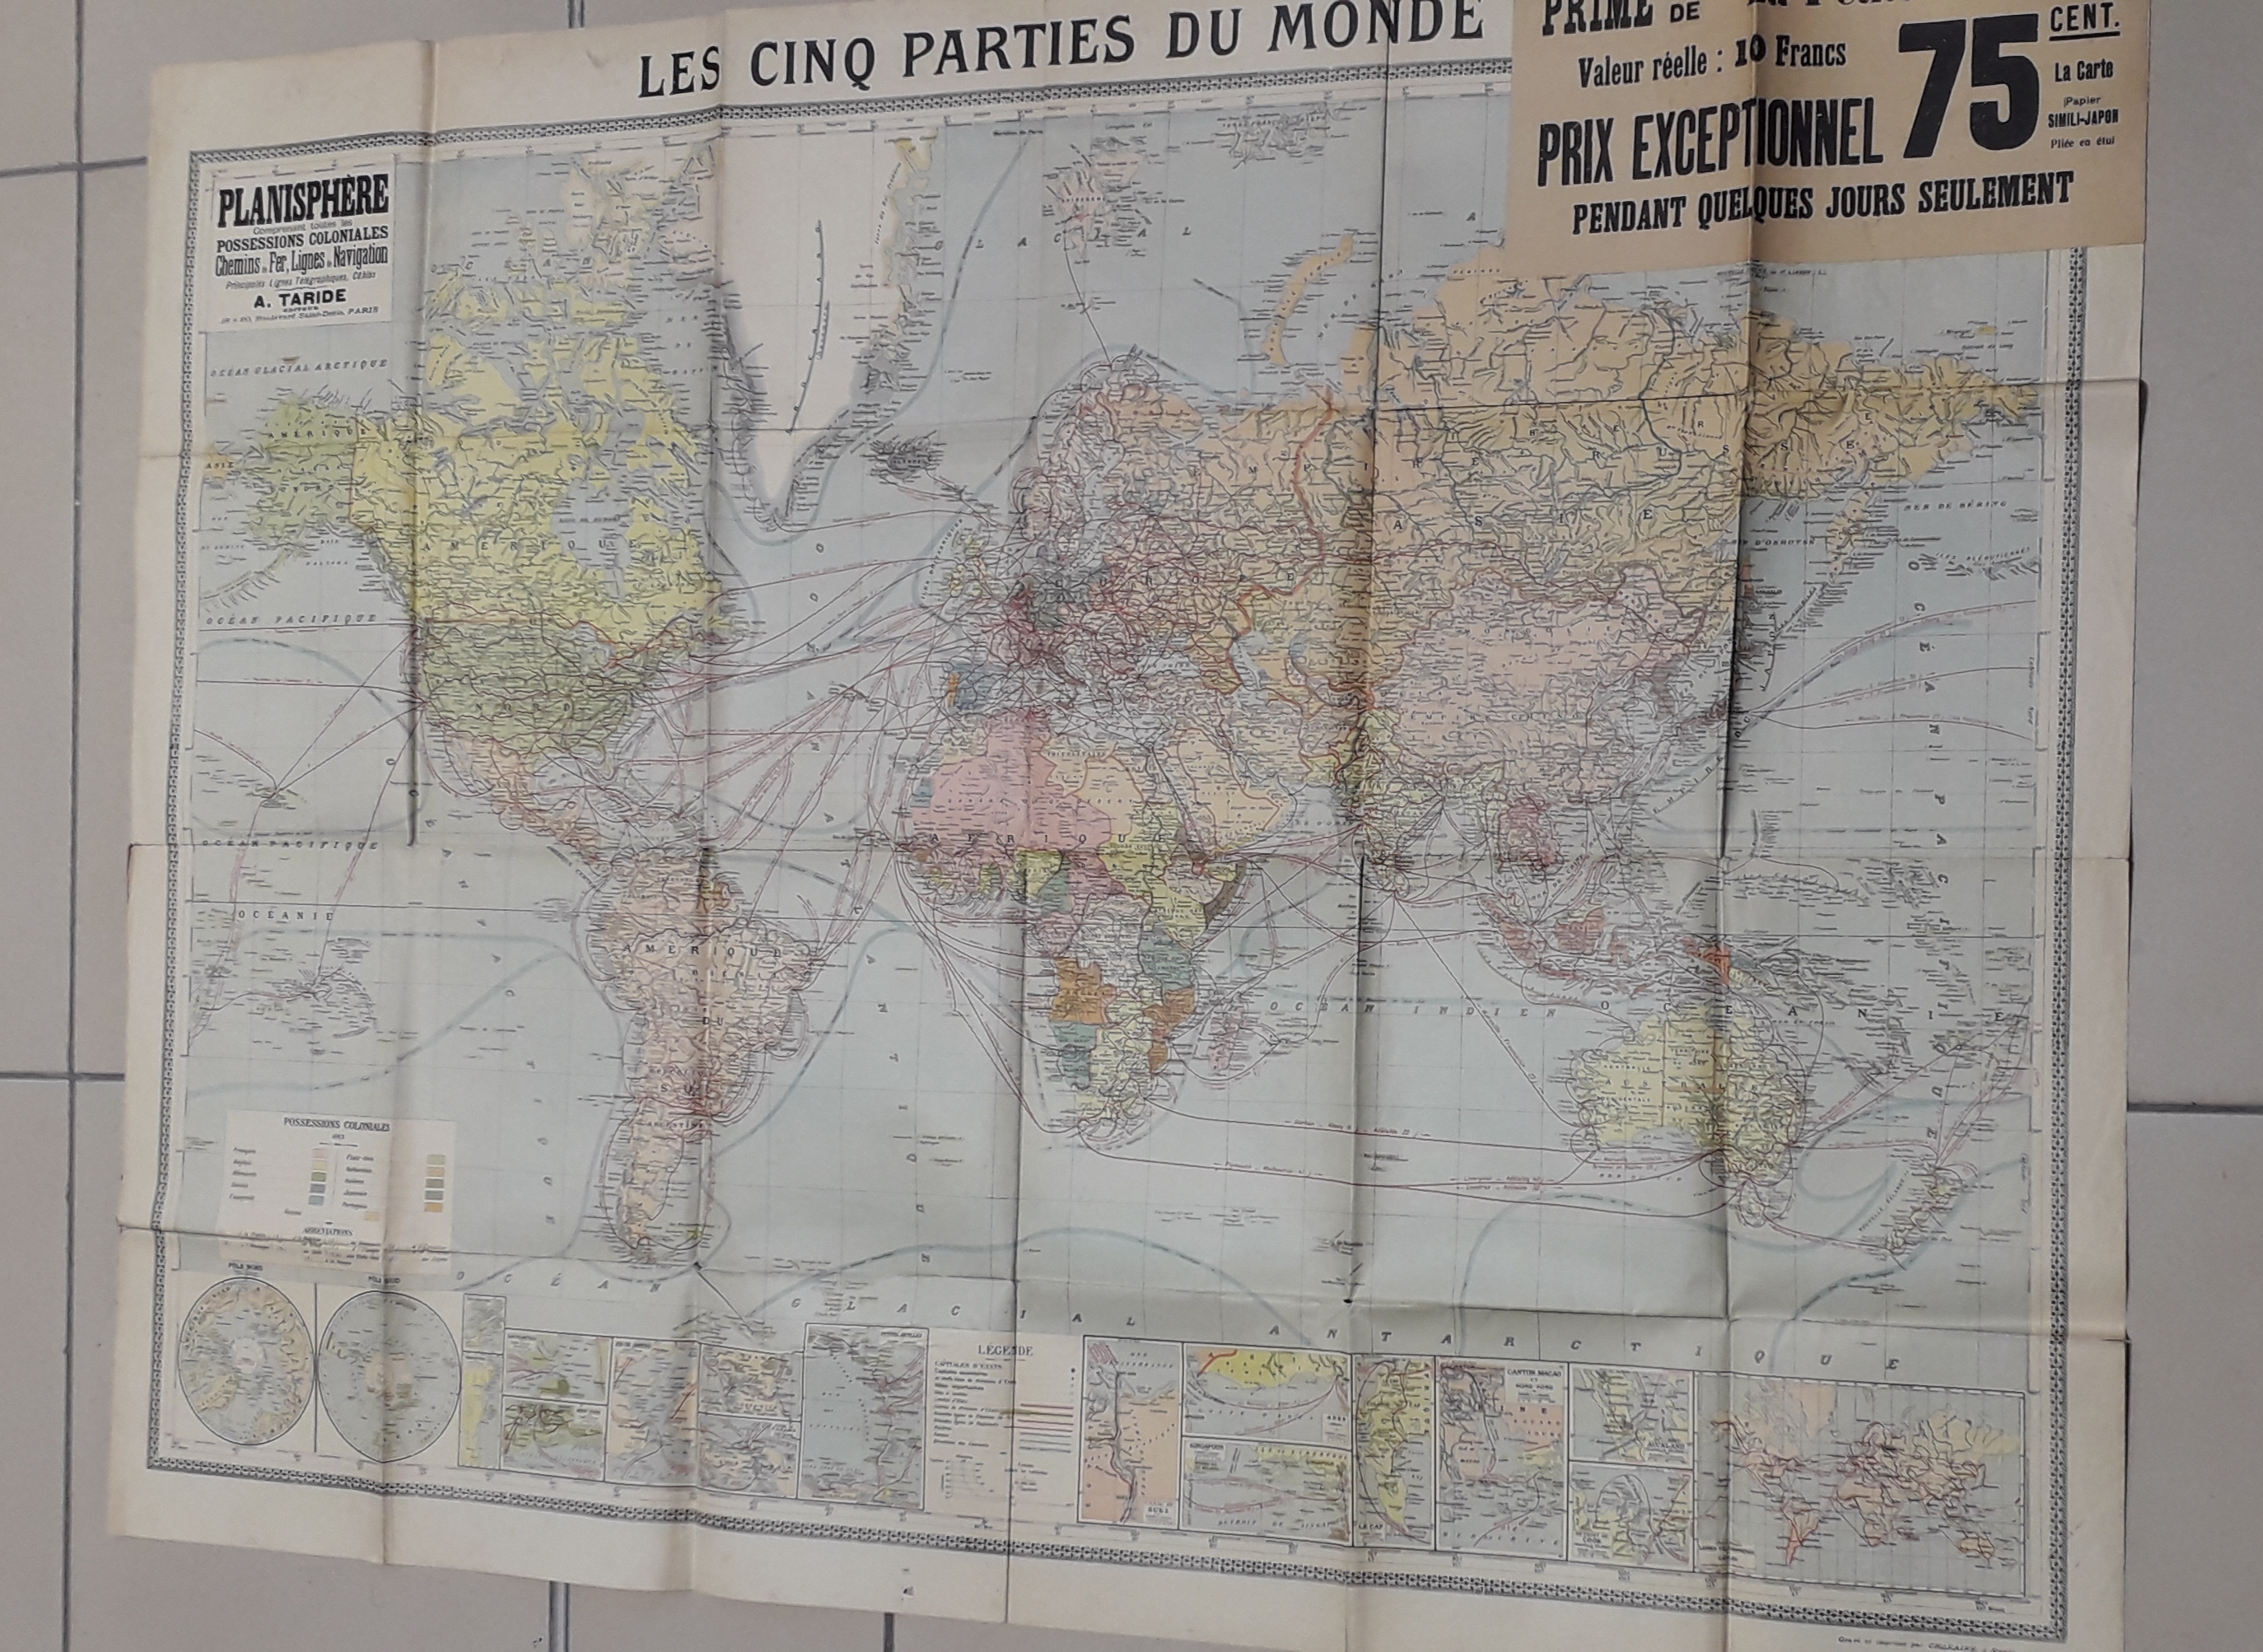 Carte : Les cinq parties du monde - PLanisphre comprenant toutes les possessions coloniales, chemins de fer, lignes de navigation, principales lignes tlgraphiques, cbles